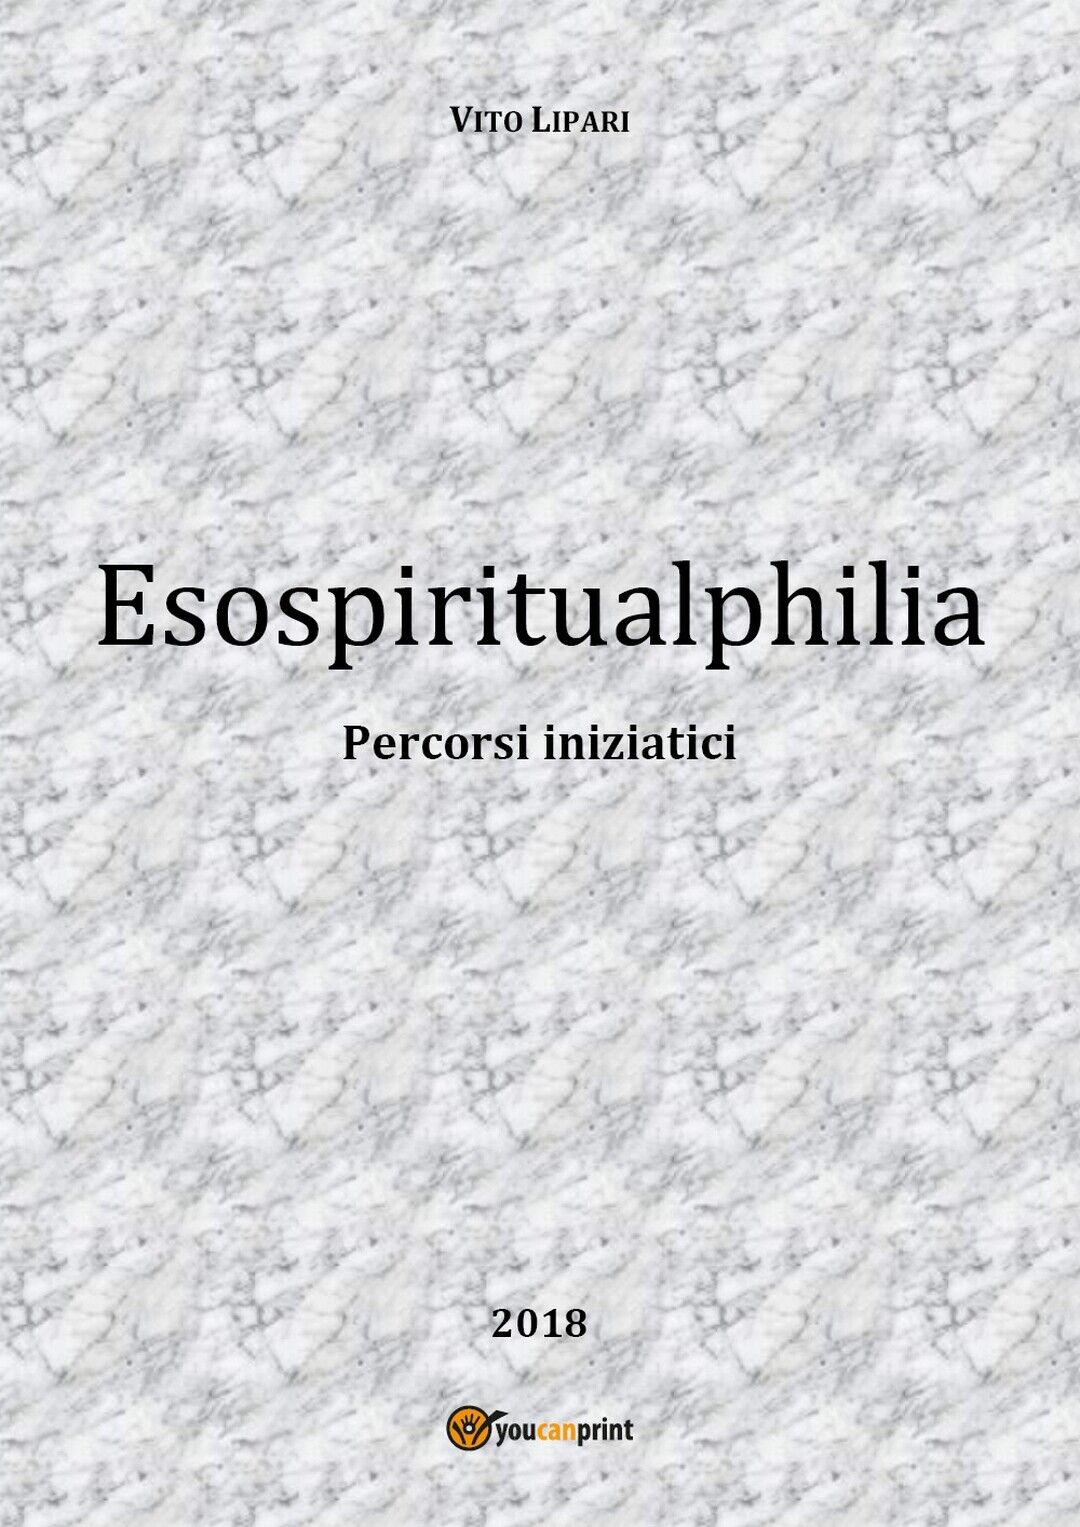 Esospiritualphilia  di Vito Lipari,  2018,  Youcanprint